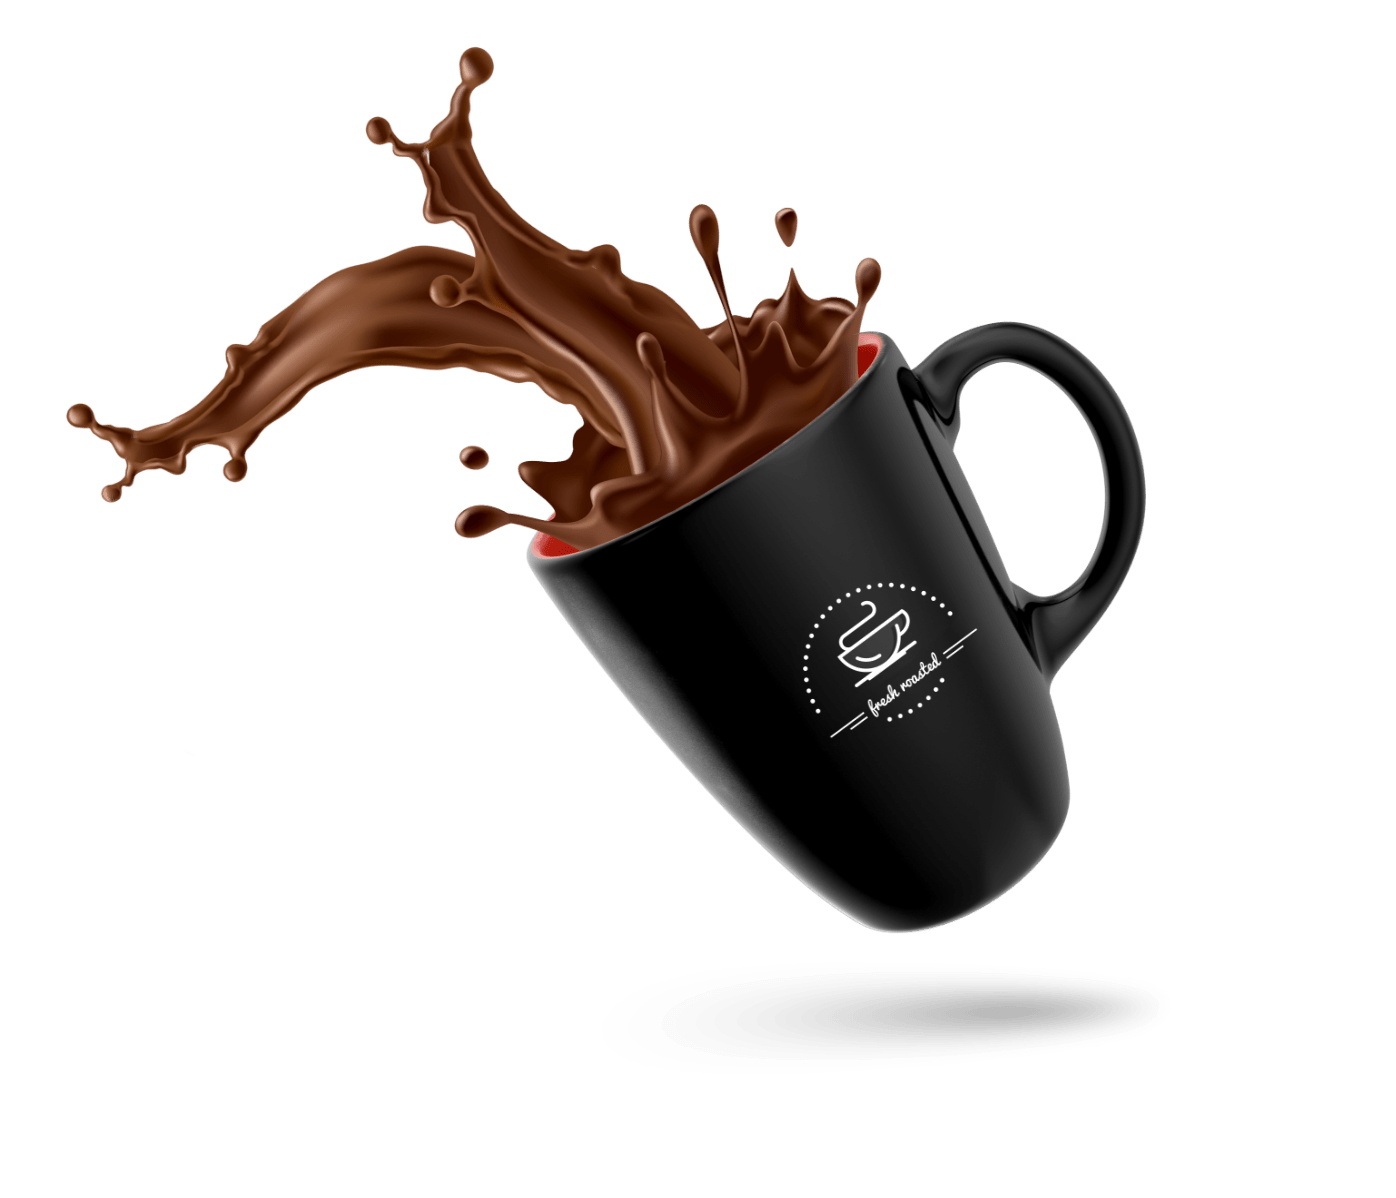 coffee-mug.png